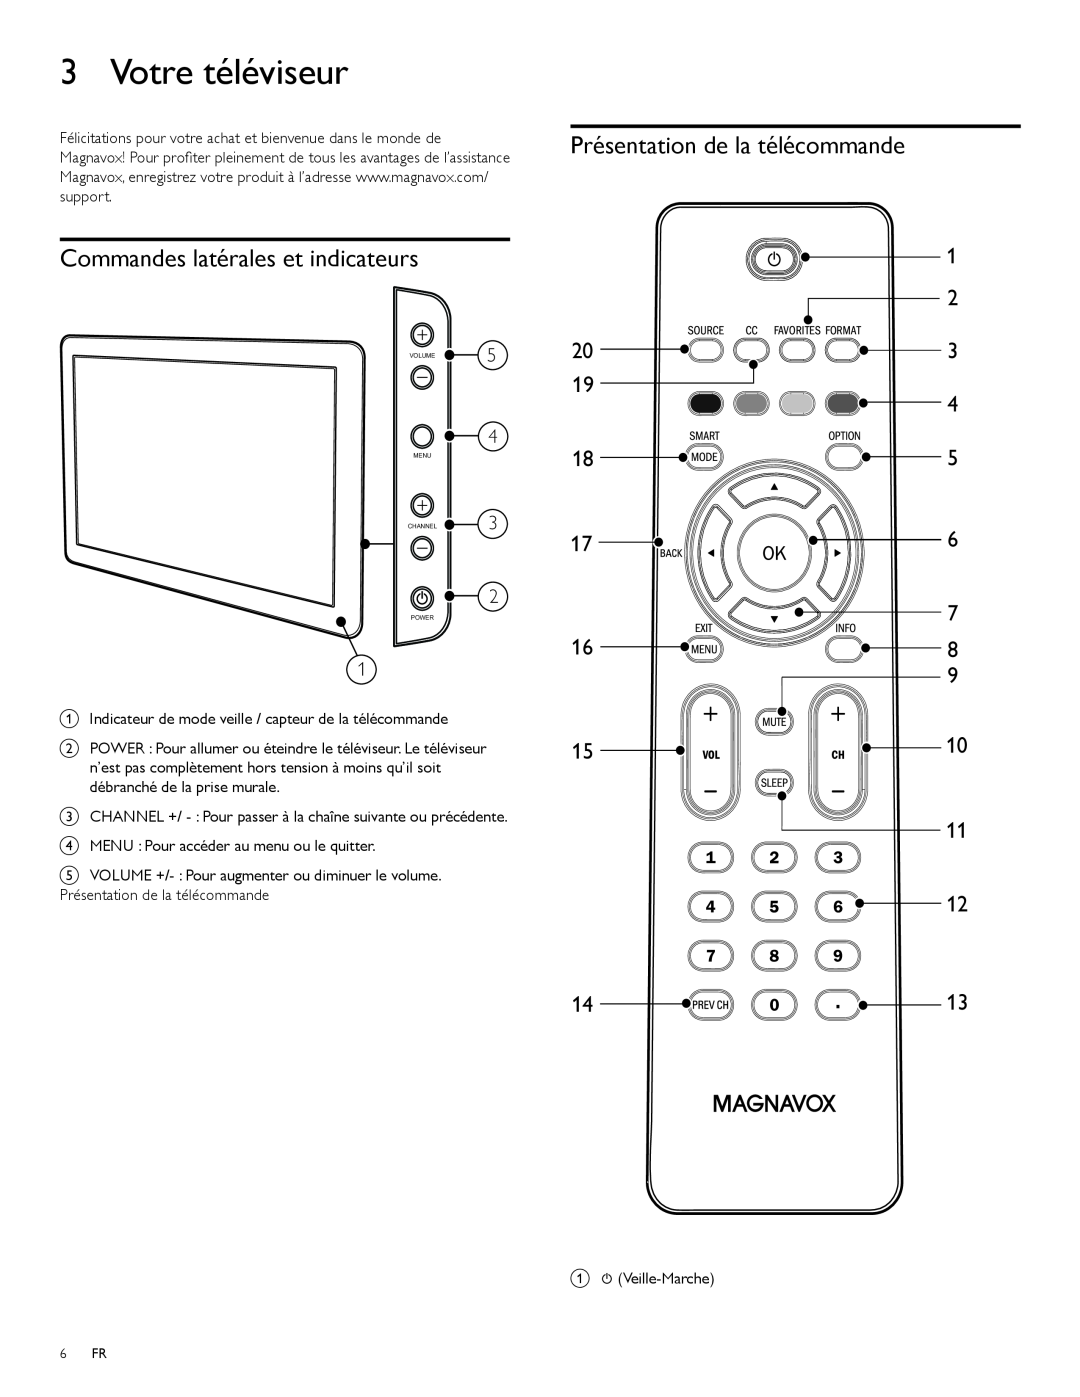 Magnavox 47MF439B user manual Votre téléviseur, Commandes latérales et indicateurs, Présentation de la télécommande 